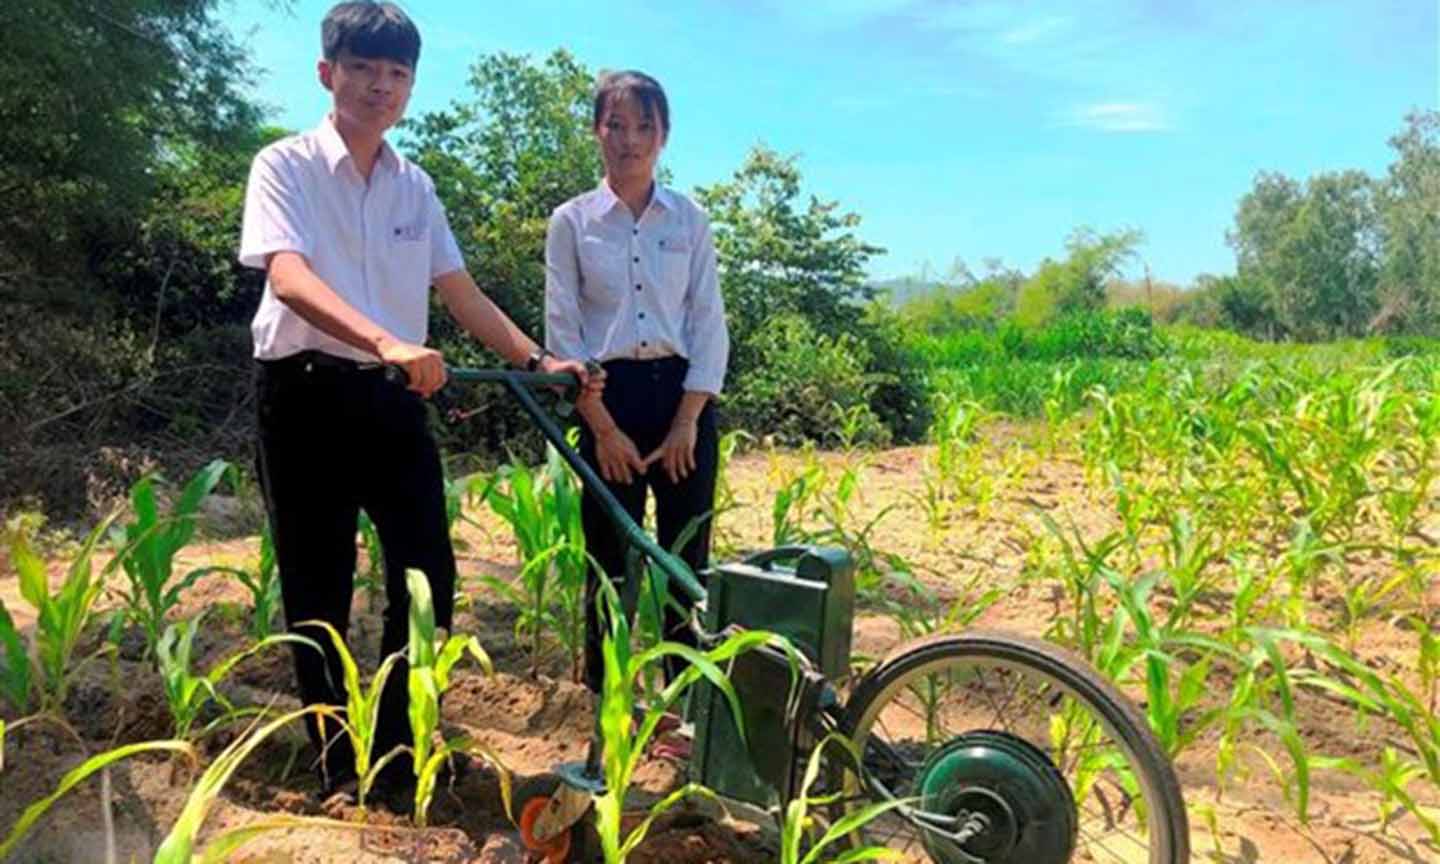 Em Phạm Thị Hoài Phương và Lê Tuấn Kiệt với máy cày điện để làm cỏ, bón phân. (Ảnh: Nguyên Linh/TTXVN)